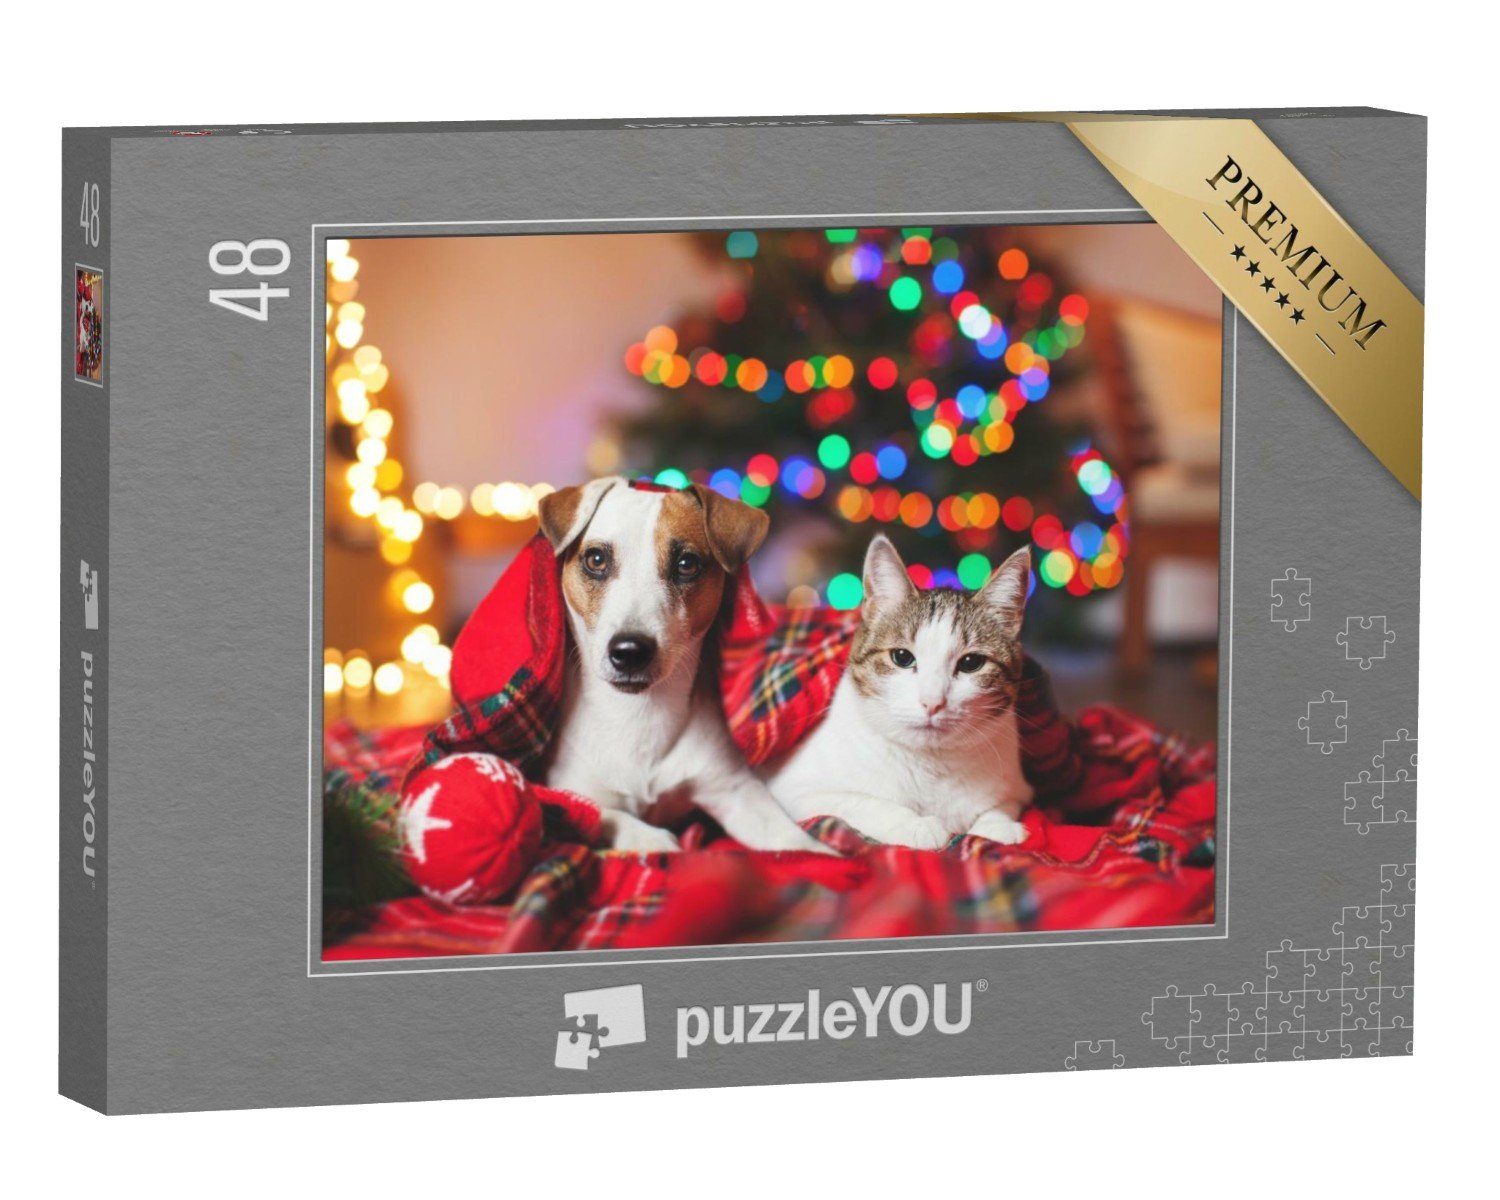 Puzzle puzzleYOU Weihnachtsbaum, einem puzzleYOU-Kollektionen und Katze unter Hund 48 Puzzleteile, Katzen-Puzzles